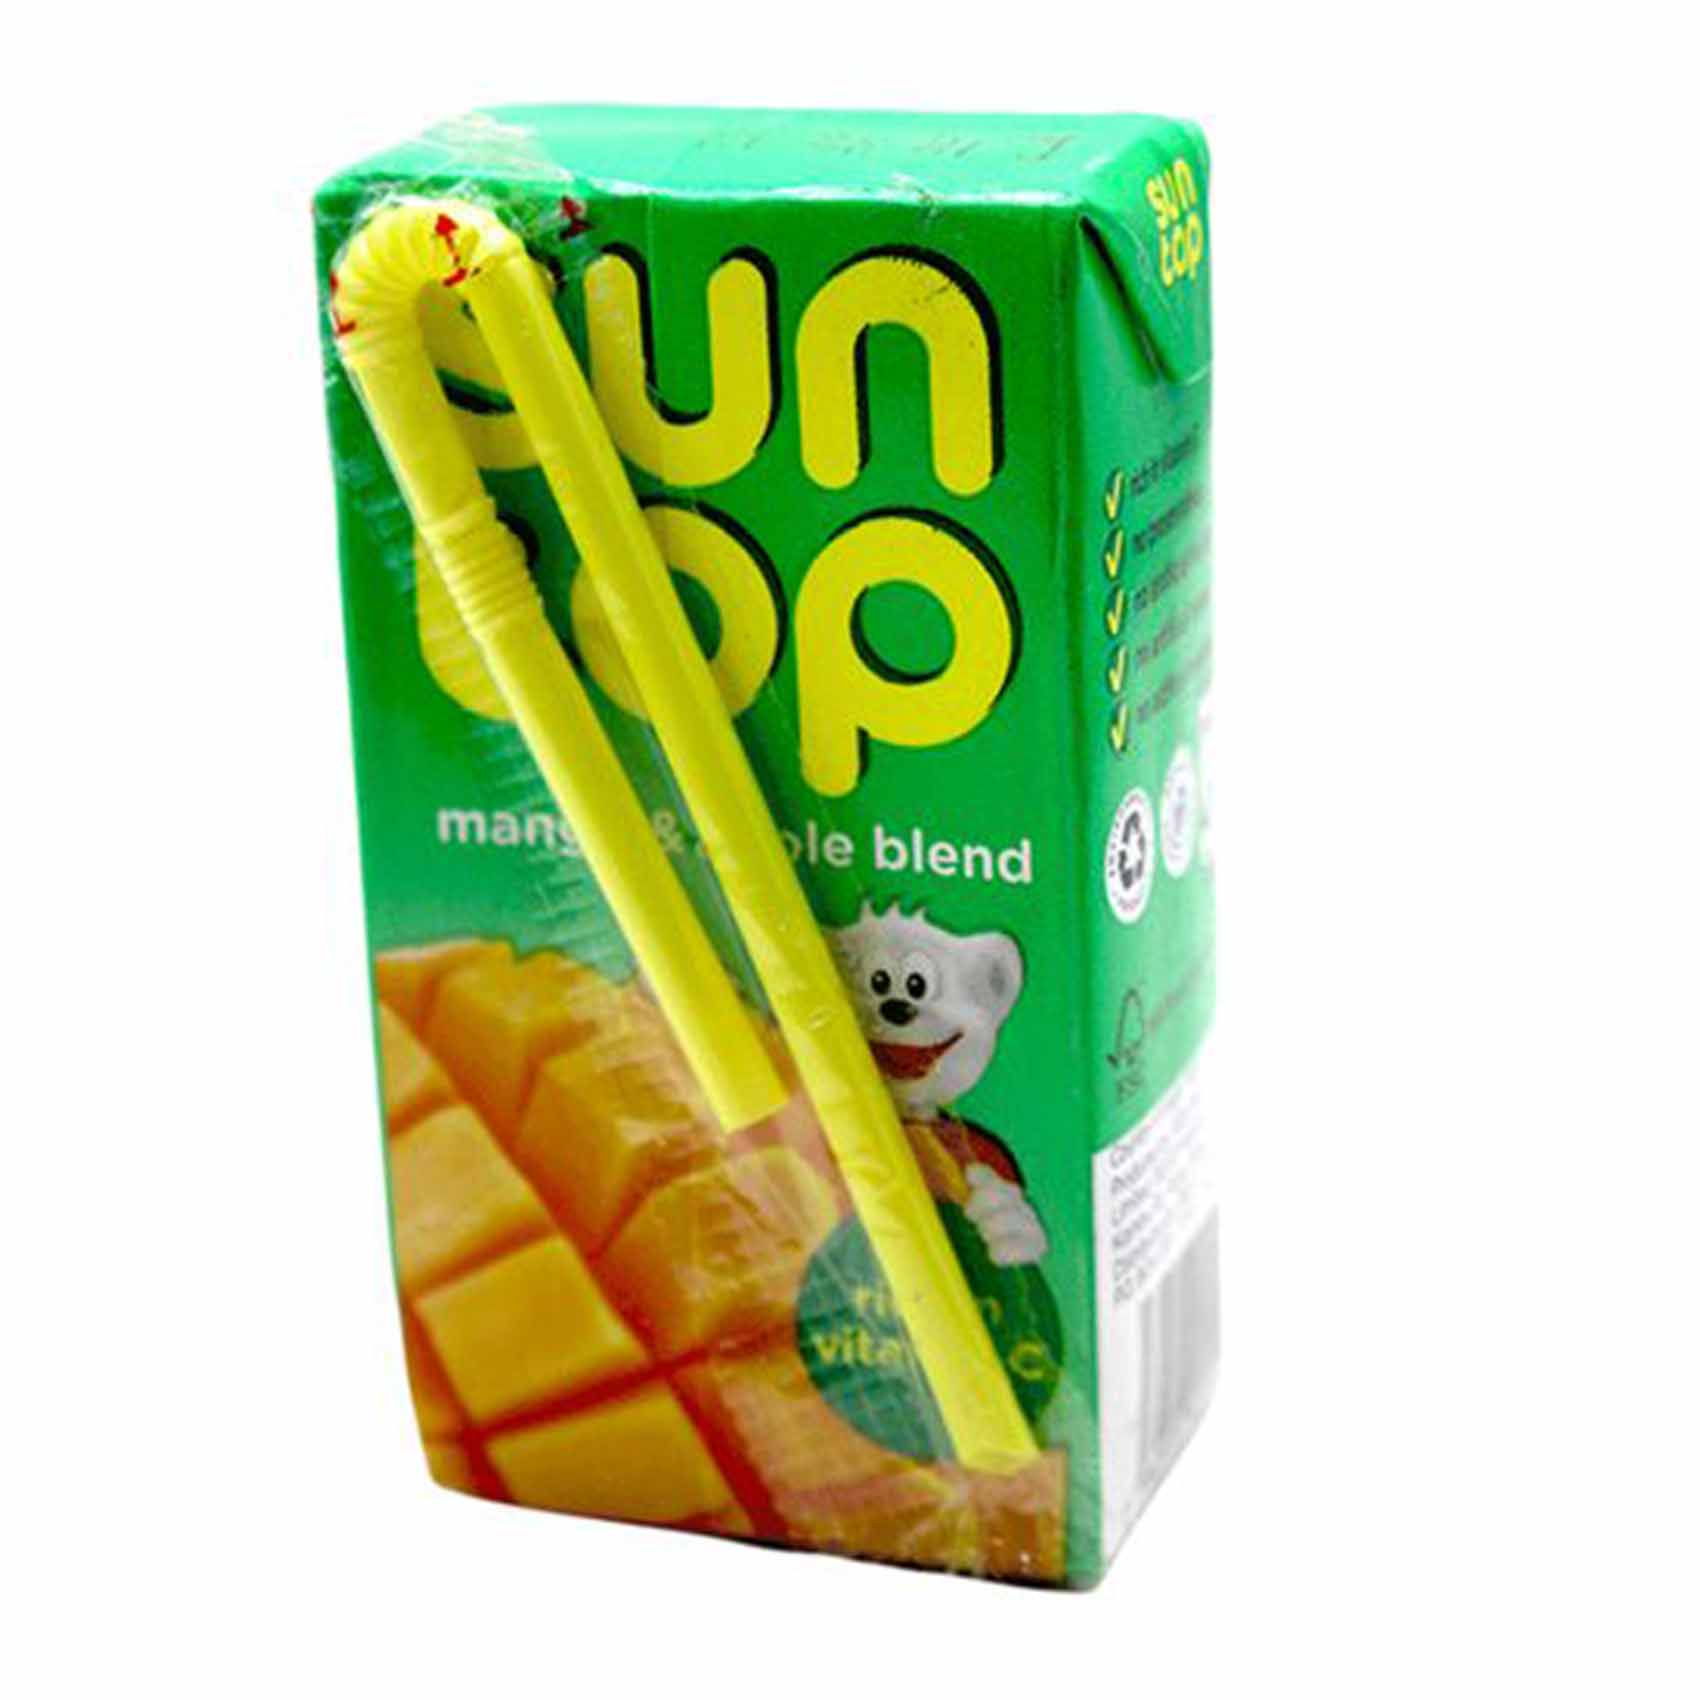 Suntop Mango Fruit Juice 125Ml